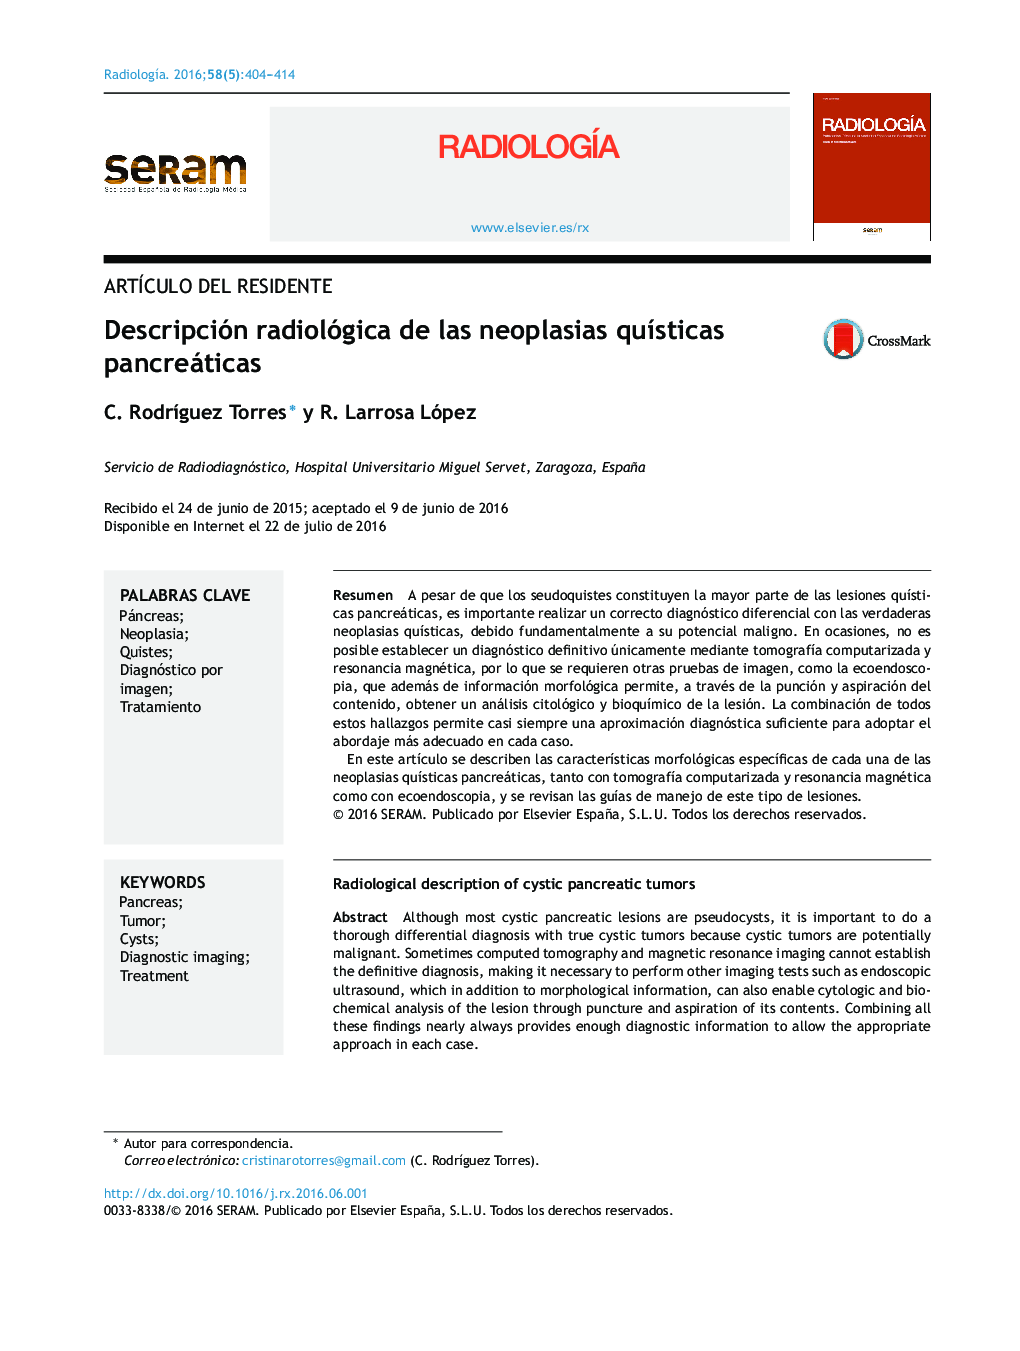 Descripción radiológica de las neoplasias quísticas pancreáticas